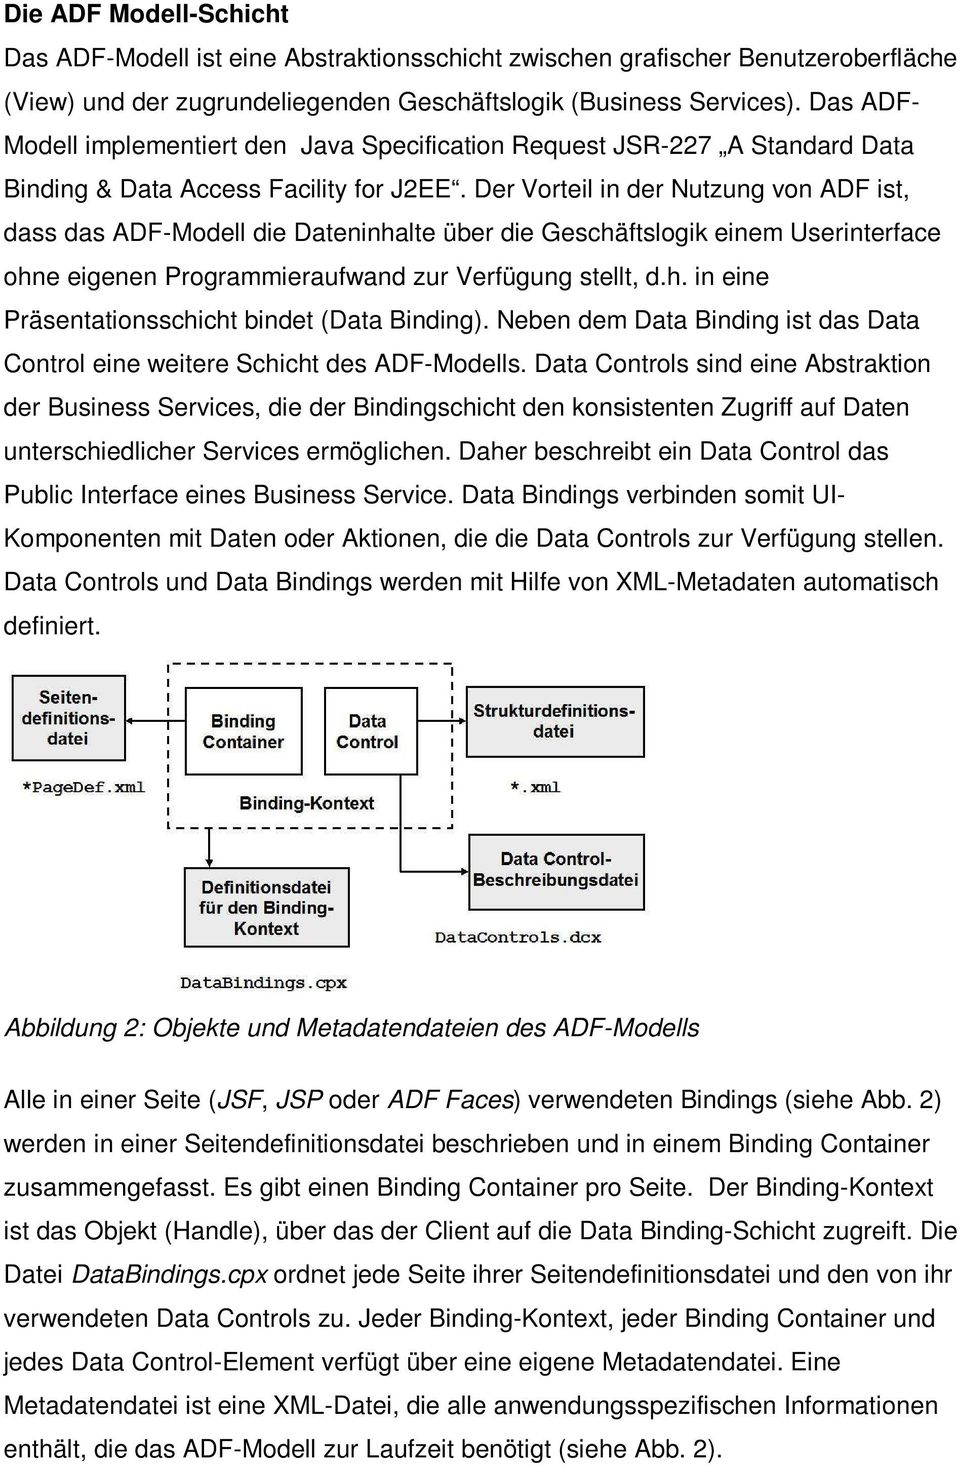 Der Vorteil in der Nutzung von ADF ist, dass das ADF-Modell die Dateninhalte über die Geschäftslogik einem Userinterface ohne eigenen Programmieraufwand zur Verfügung stellt, d.h. in eine Präsentationsschicht bindet (Data Binding).